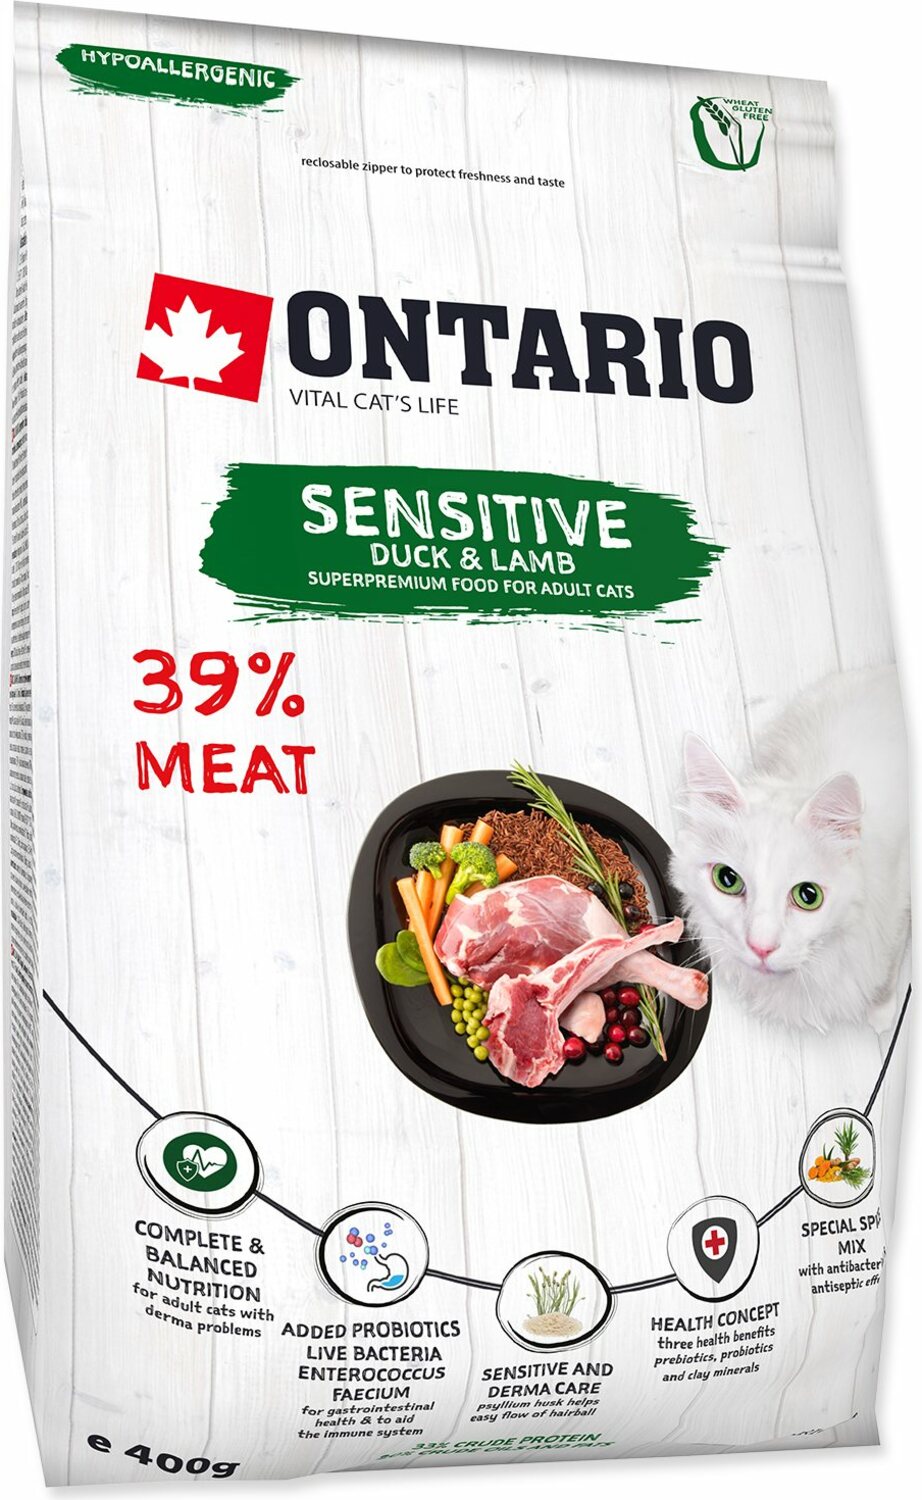 Krmivo Ontario Cat sensitive/Derma 0,4kg